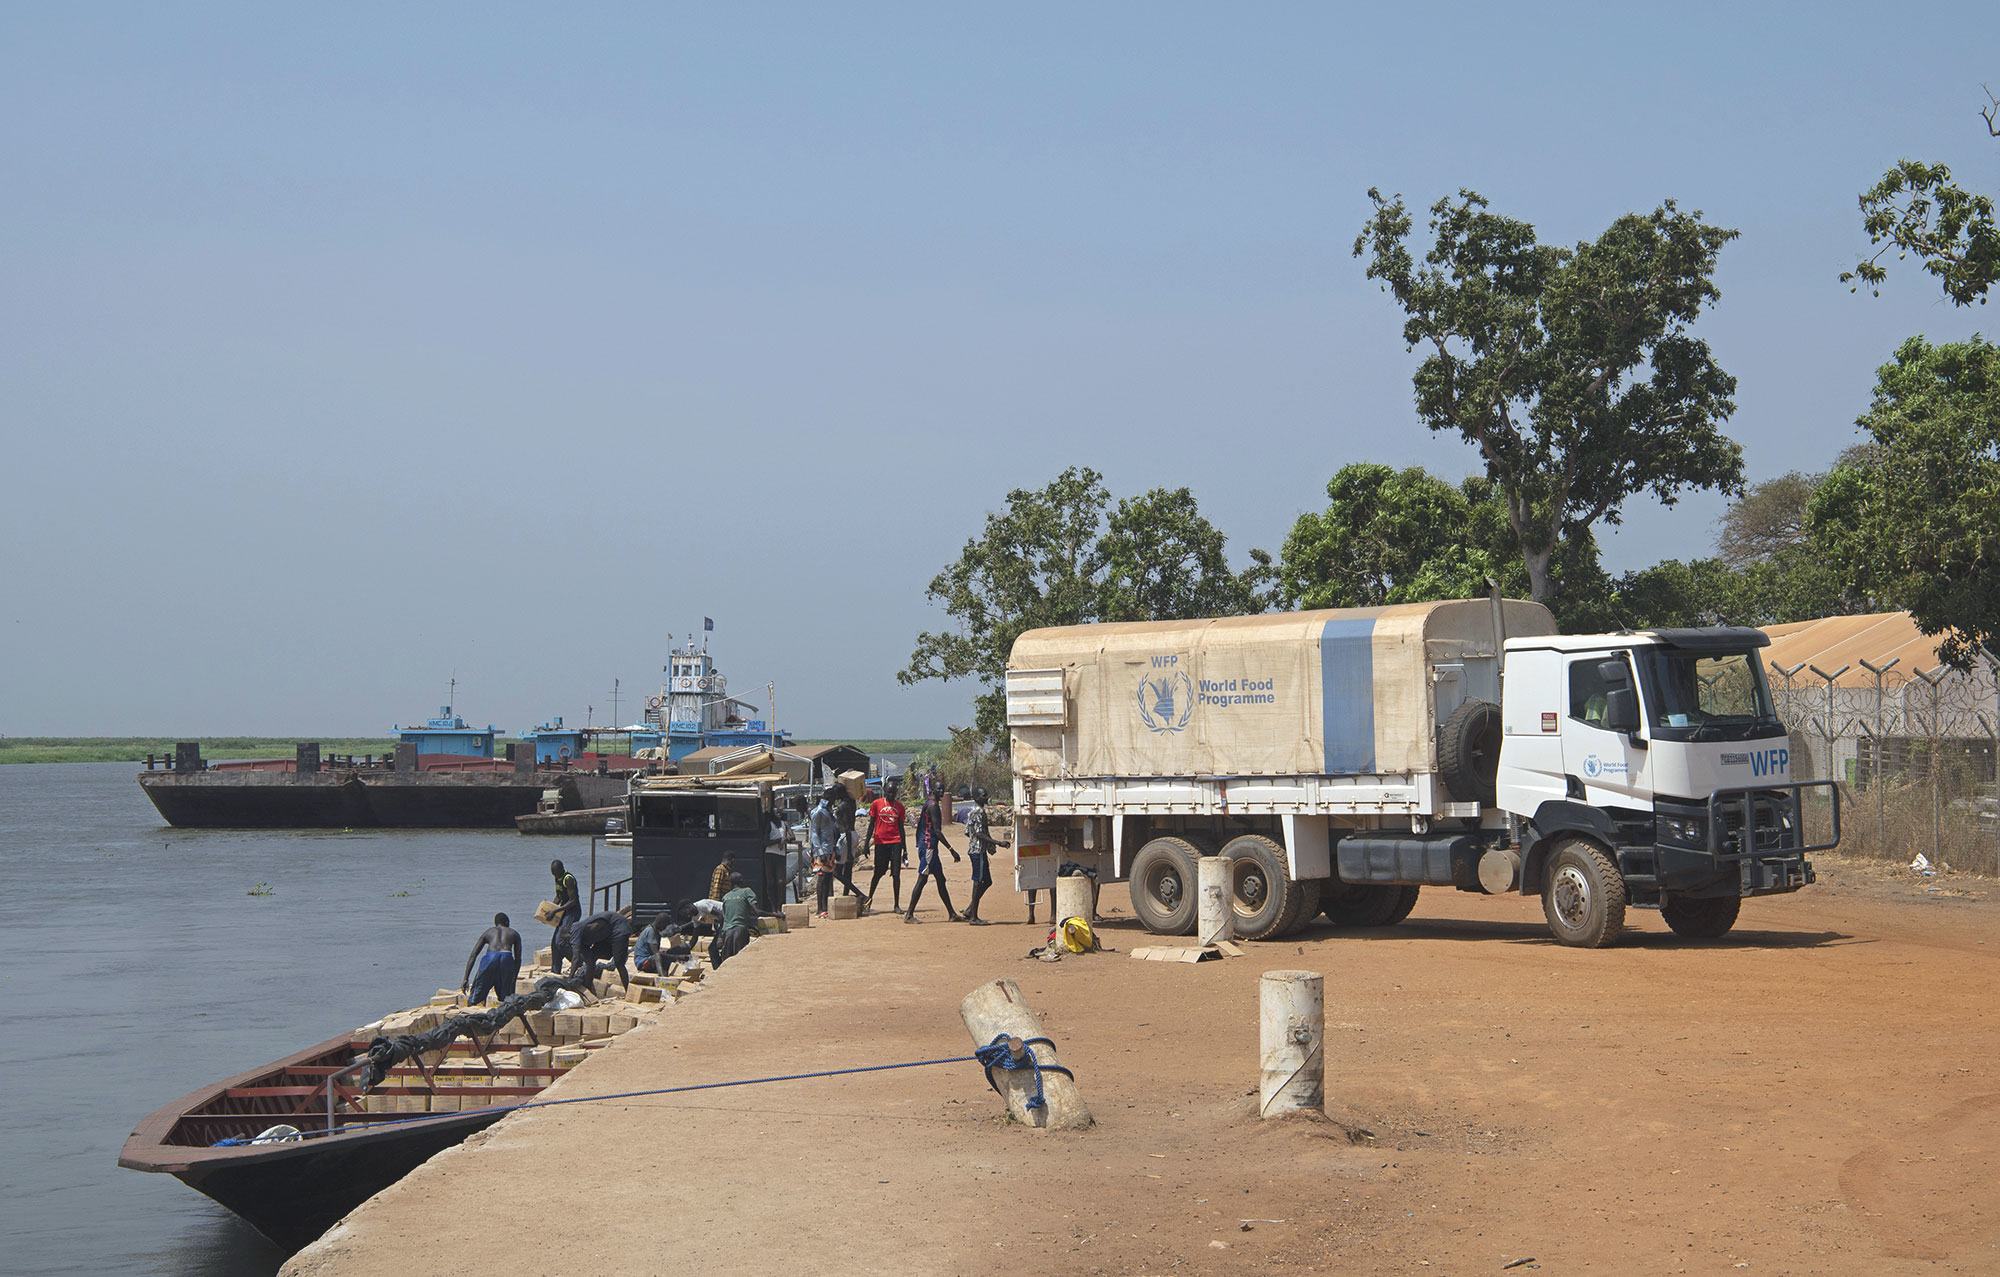 يتم تسليم المساعدات الغذائية بالقوارب في بور بجنوب السودان.